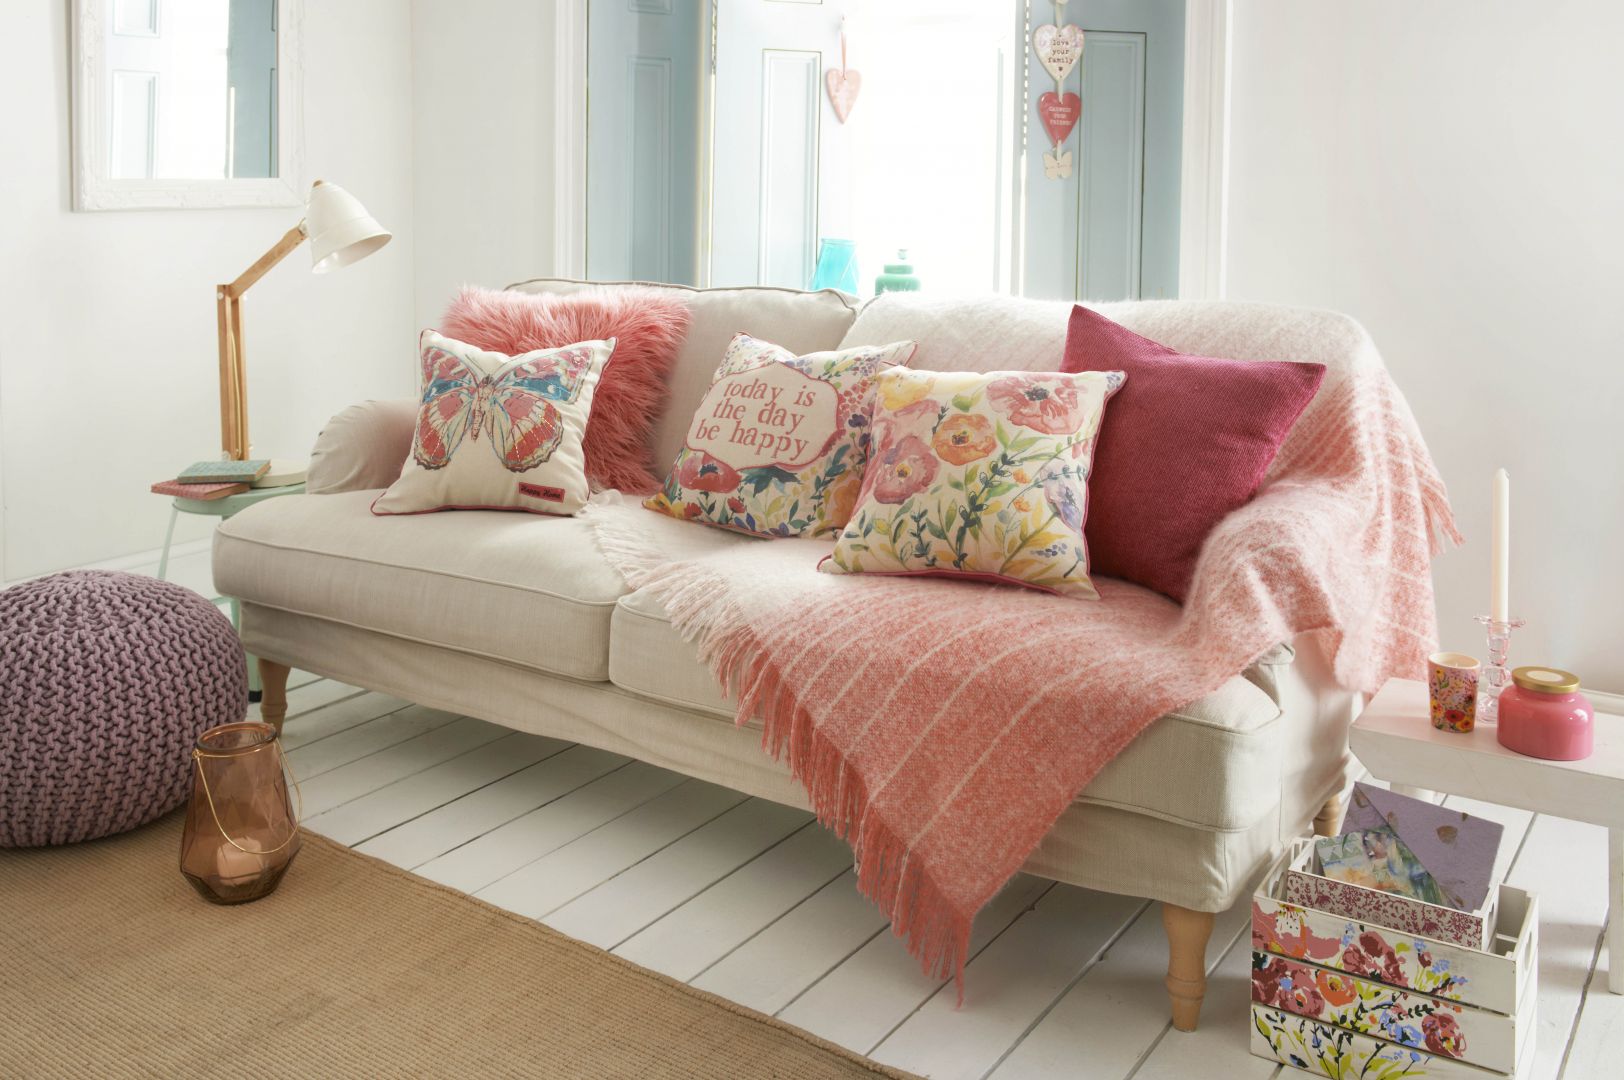 Aby sofa w salonie prezentowała się przytulniej, warto udekorować ją kolorowymi poduszkami. Fot. Matalan